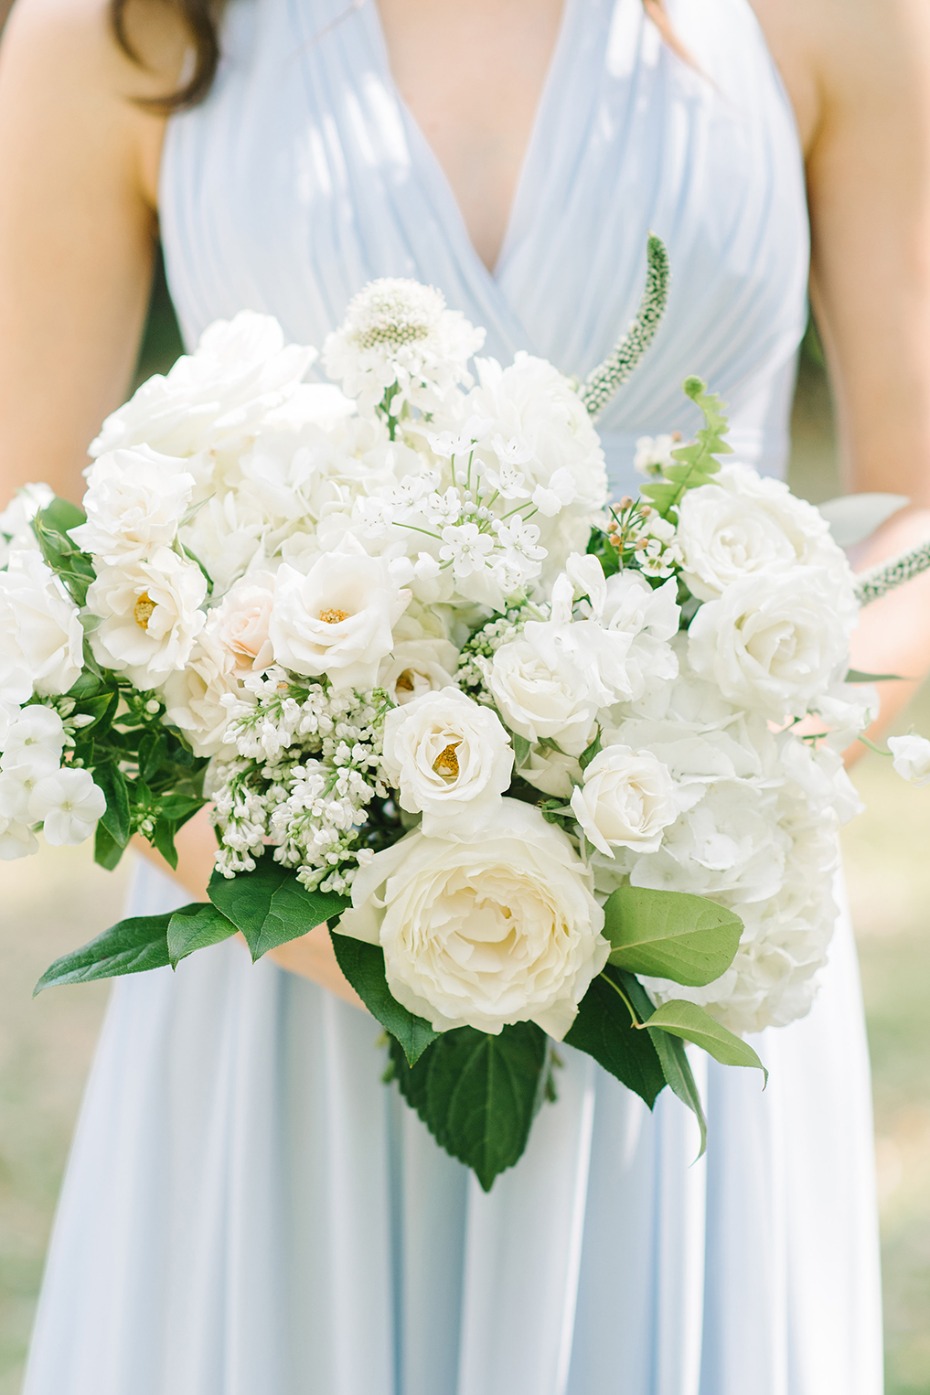 White rose bridesmaid bouquet